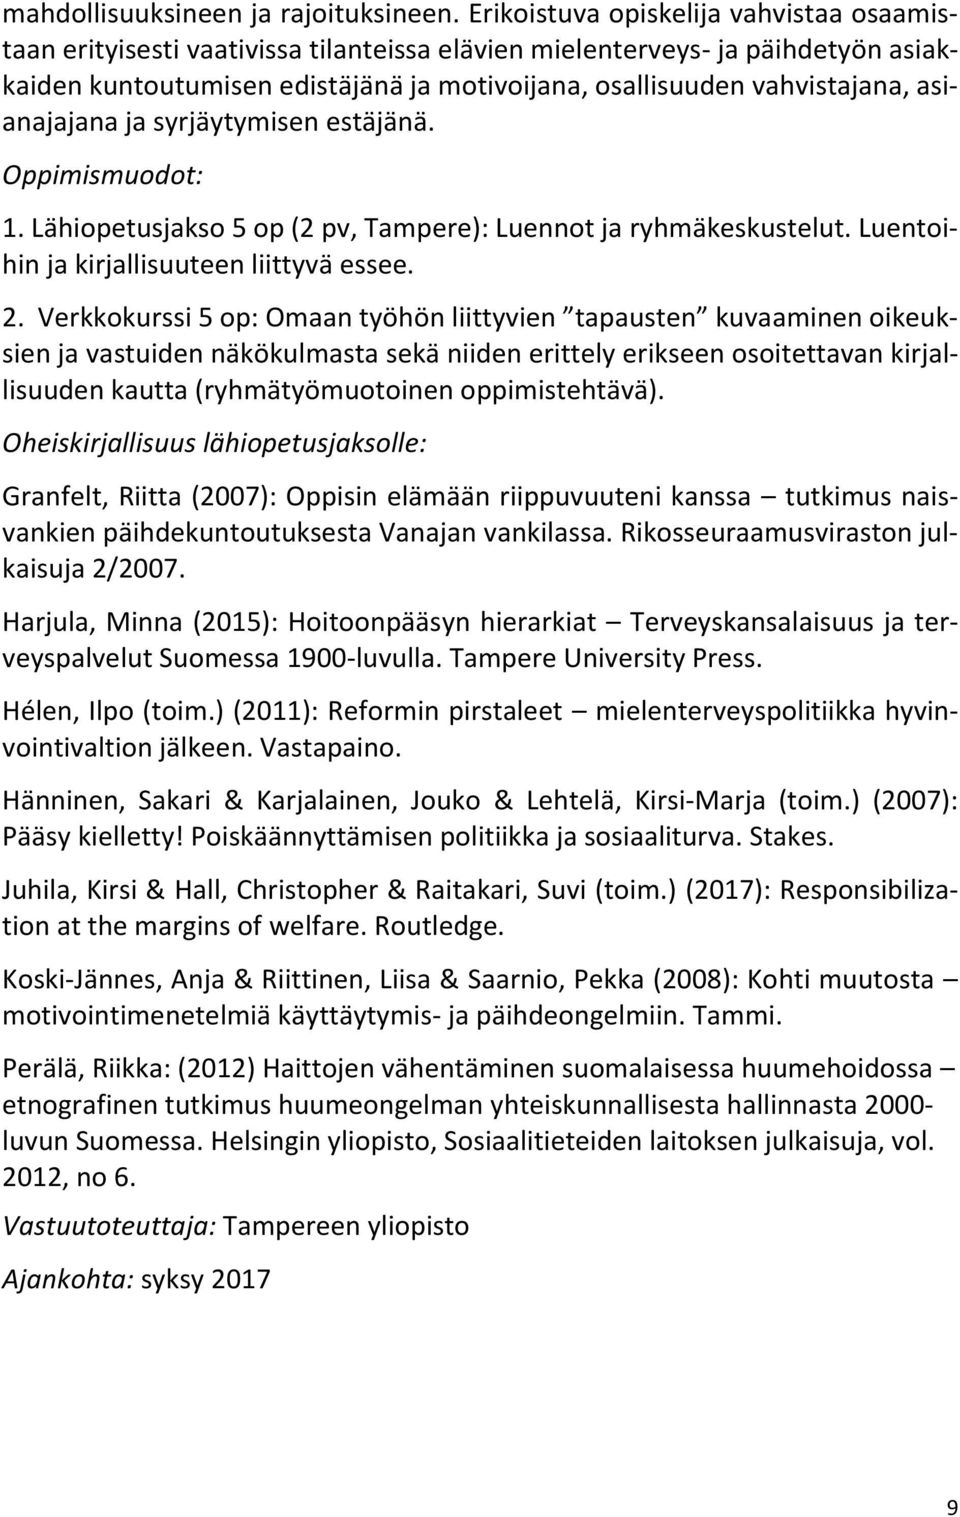 asianajajana ja syrjäytymisen estäjänä. Oppimismuodot: 1. Lähiopetusjakso 5 op (2 pv, Tampere): Luennot ja ryhmäkeskustelut. Luentoihin ja kirjallisuuteen liittyvä essee. 2.